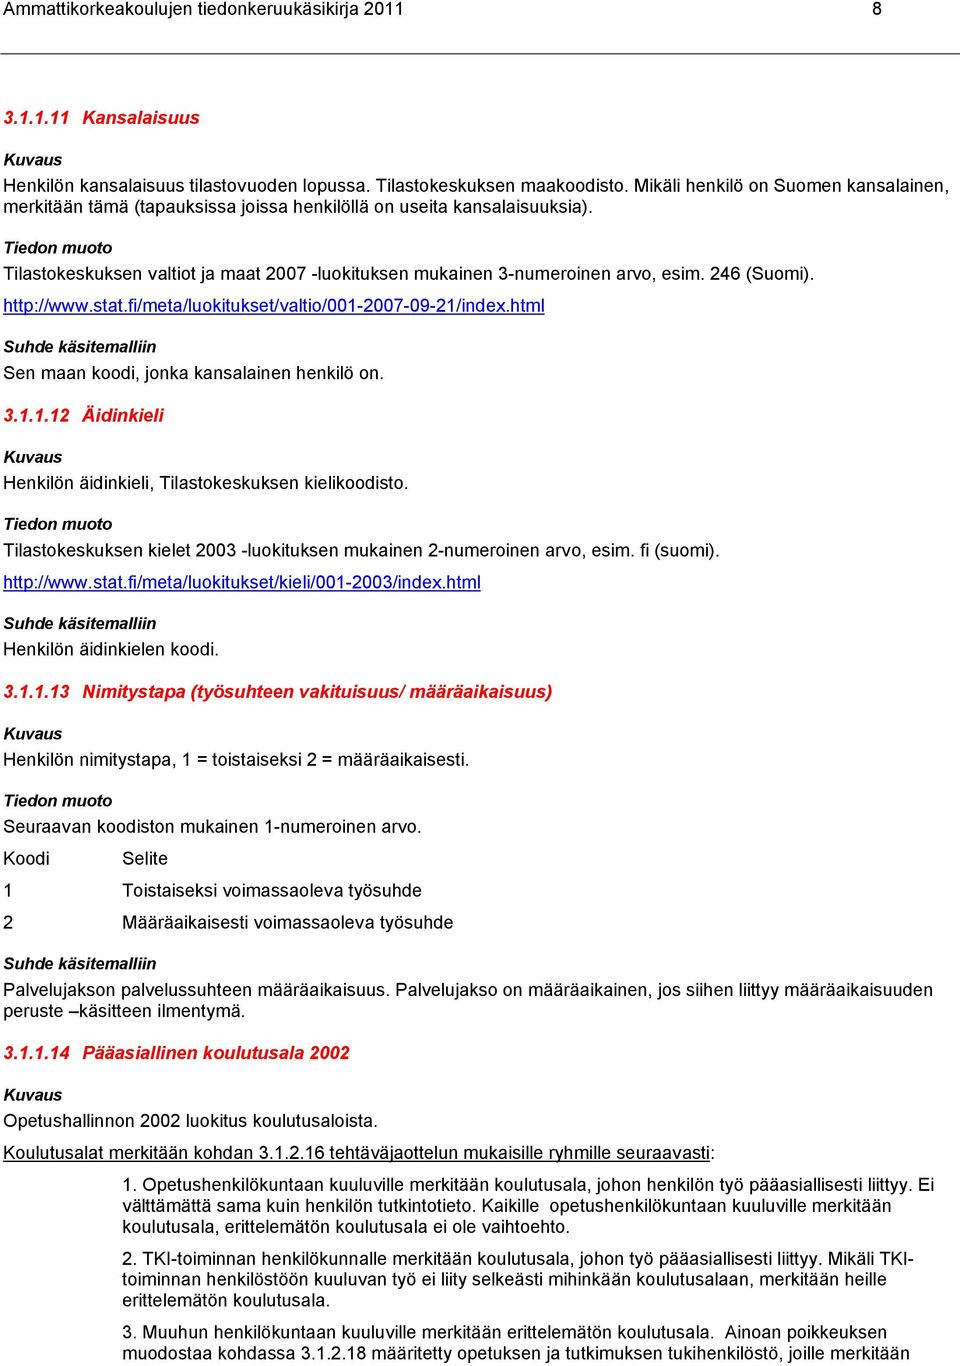 246 (Suomi). http://www.stat.fi/meta/luokitukset/valtio/001-2007-09-21/index.html Sen maan koodi, jonka kansalainen henkilö on. 3.1.1.12 Äidinkieli Henkilön äidinkieli, Tilastokeskuksen kielikoodisto.